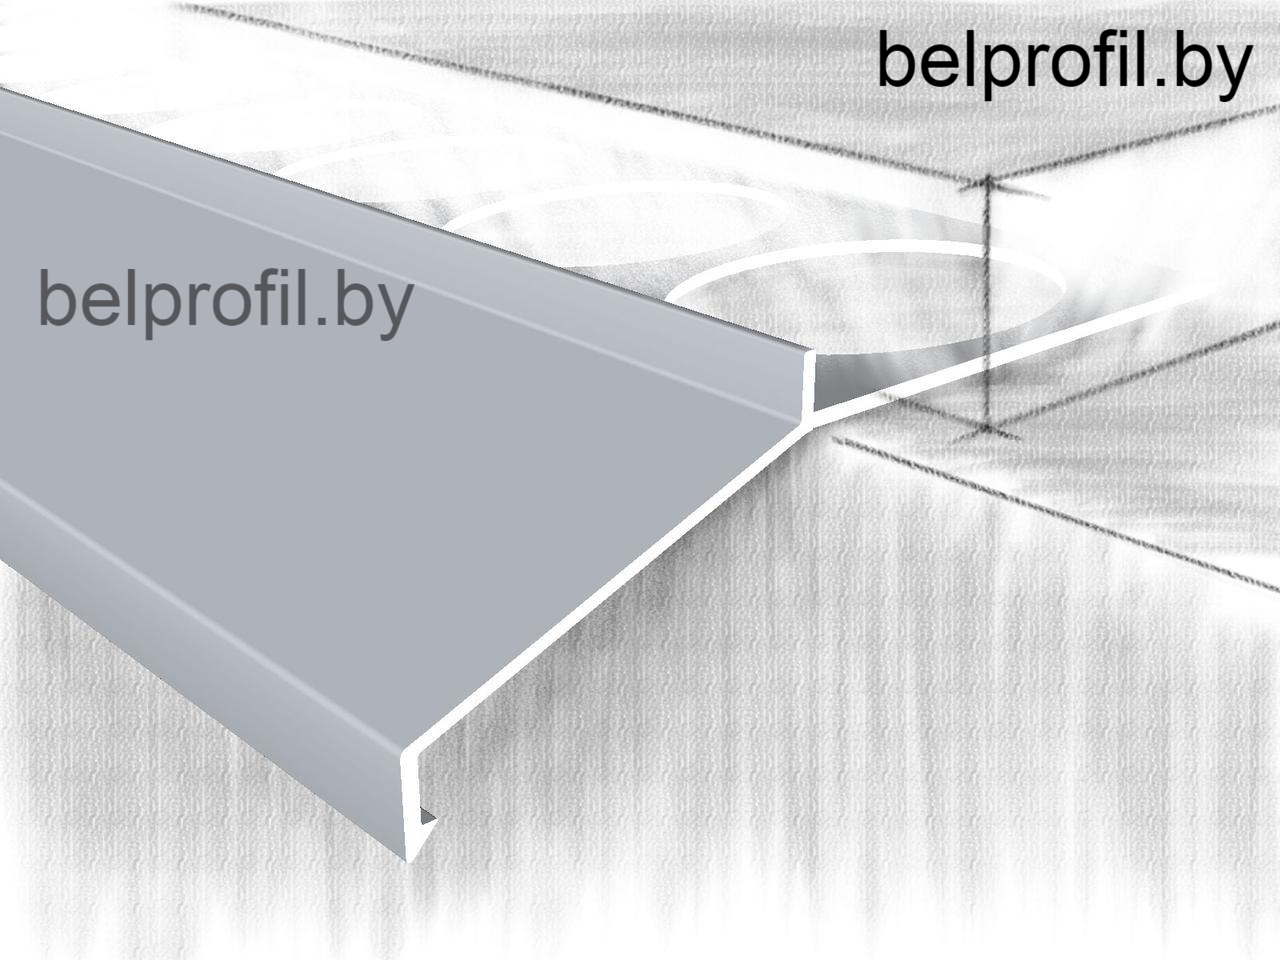 Профиль-отлив для террас и балконов макси,анод.серебро, фото 1